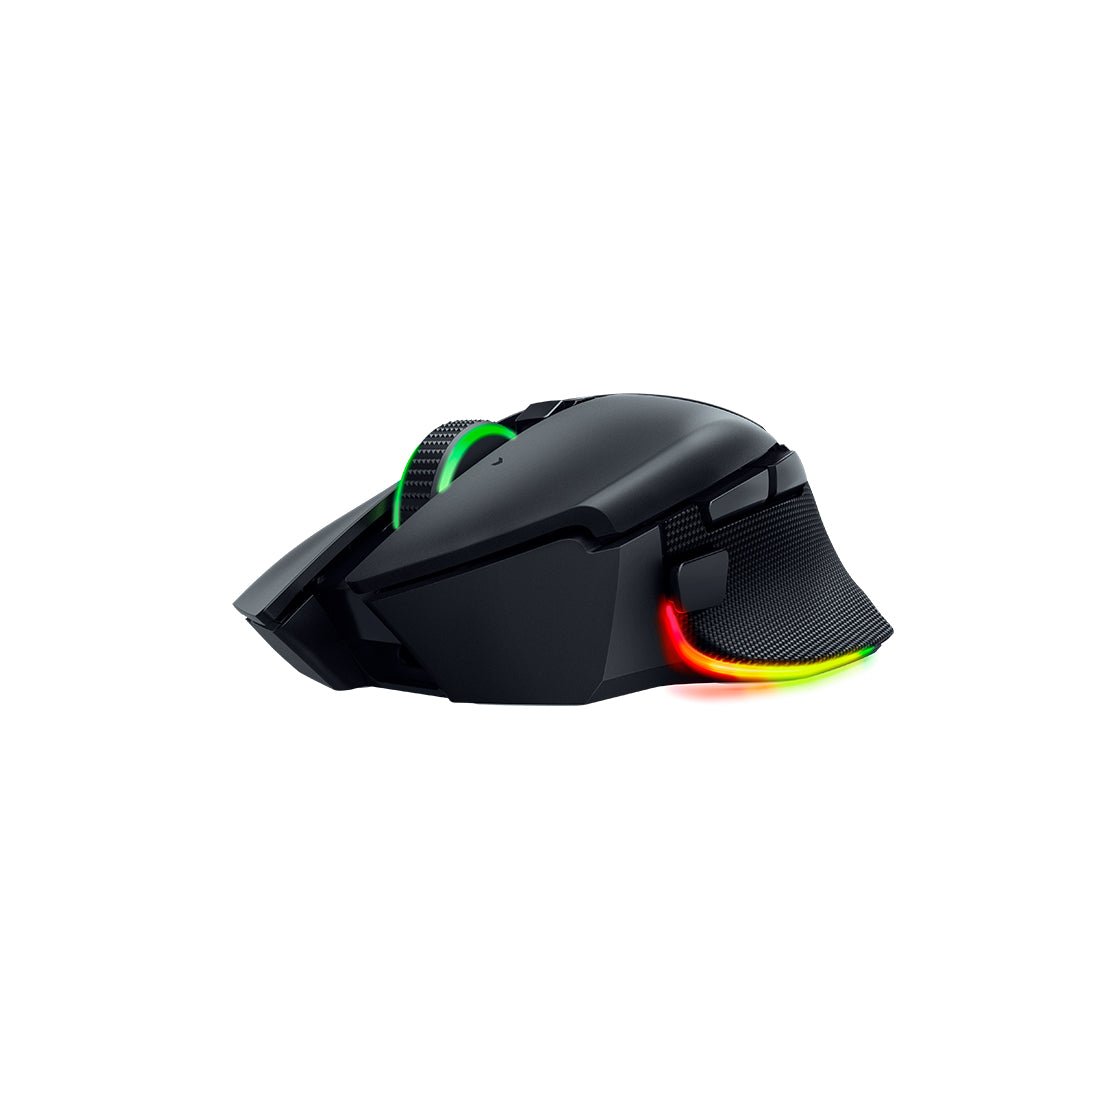 Razer Basilisk V3 Pro Wireless Gaming Mouse - Black - فأرة - Store 974 | ستور ٩٧٤